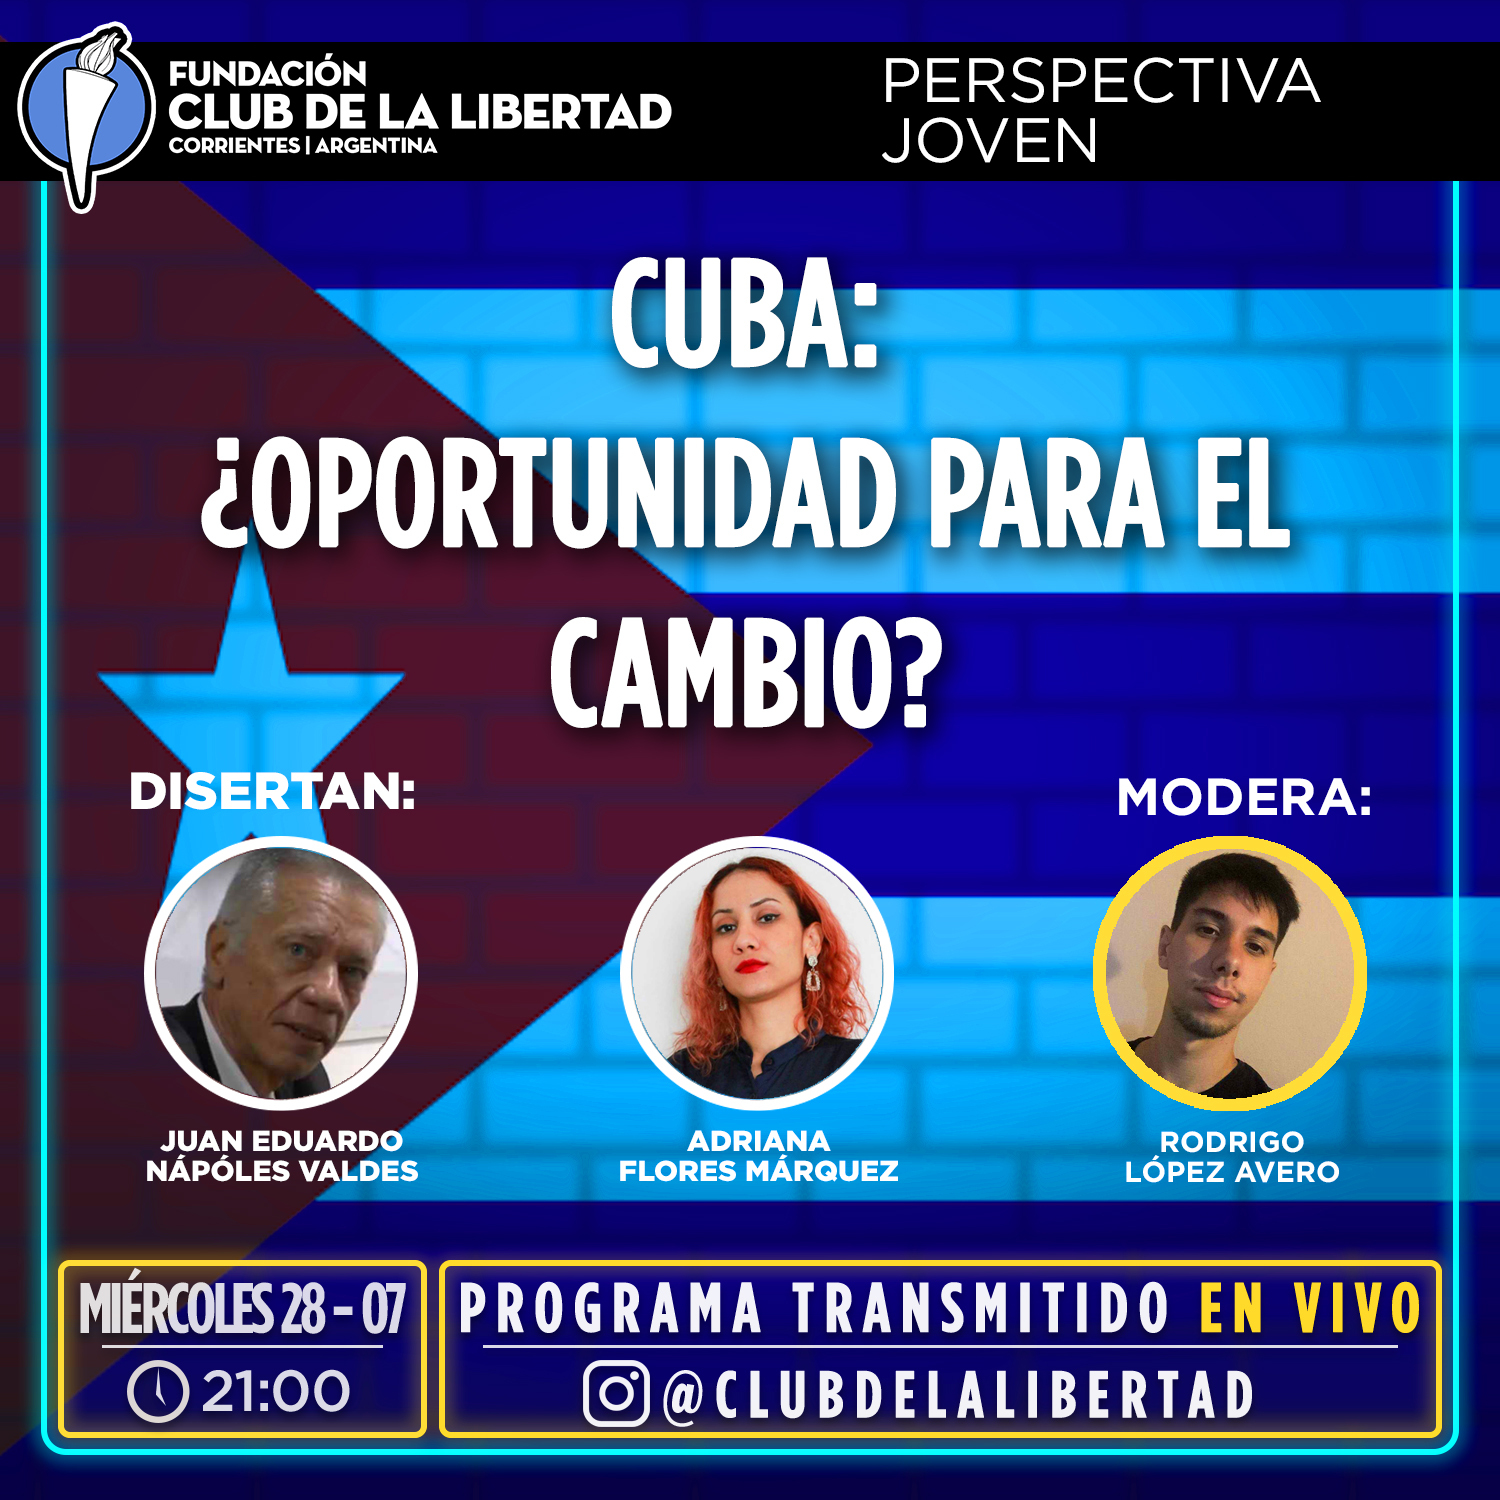 En este momento estás viendo Perspectiva Joven – Cuba: ¿Oportunidad para el cambio?